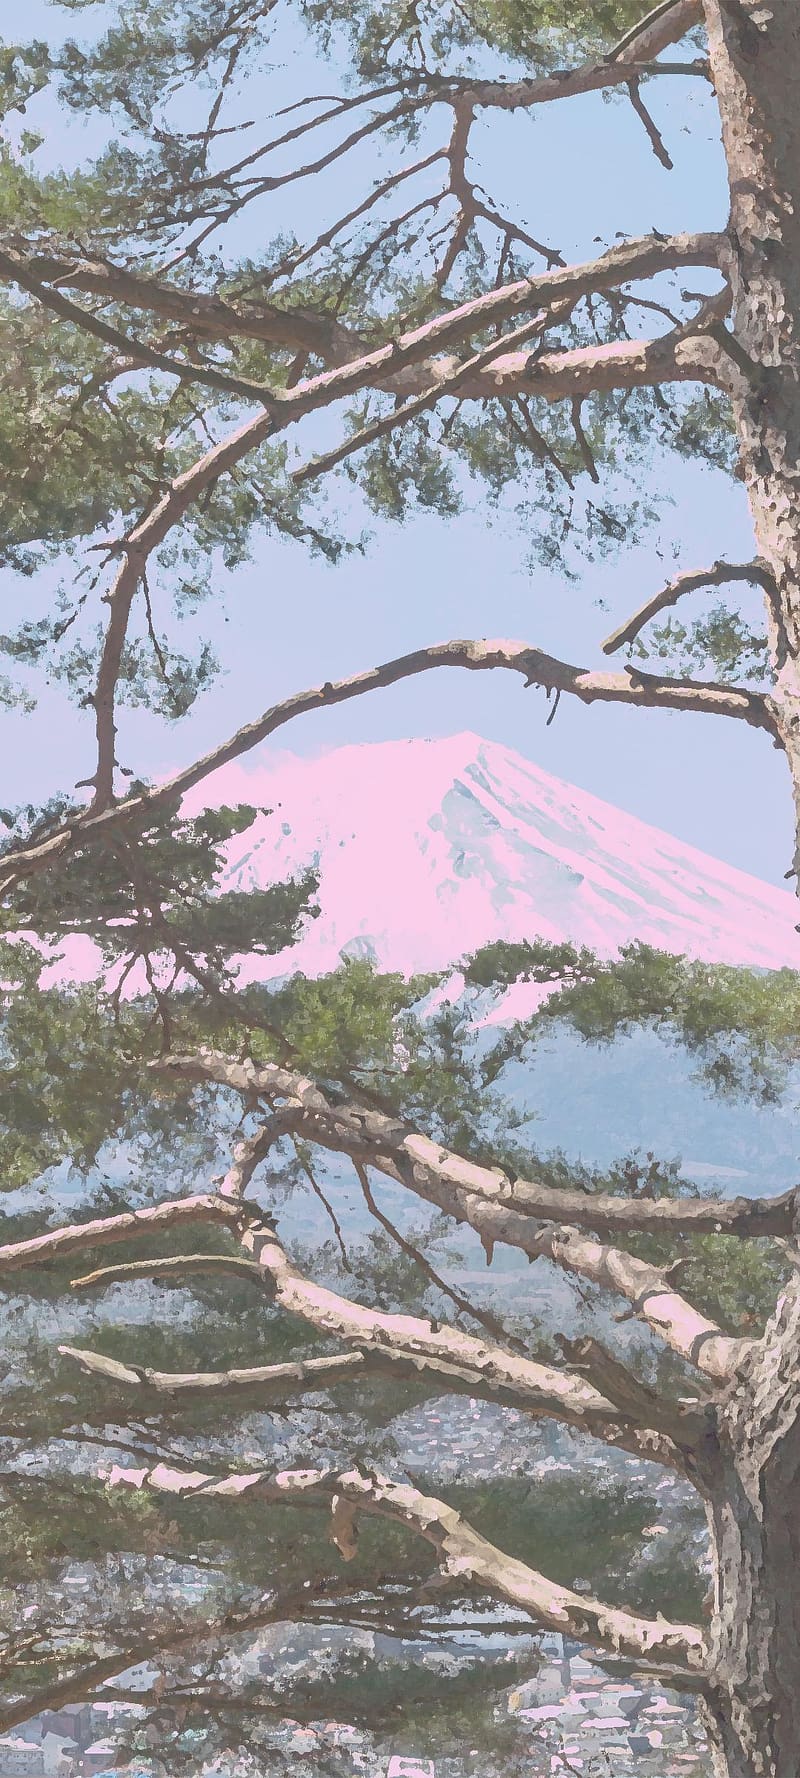 Núi Phú Sĩ (Mt. Fuji) là biểu tượng văn hóa nổi tiếng của Nhật Bản, nơi thu hút du khách từ khắp nơi trên thế giới muốn thưởng ngoạn khung cảnh tuyệt đẹp của nó. Hãy cùng xem những bức ảnh đẹp mê hồn về núi Phú Sĩ trên trang web của chúng tôi!